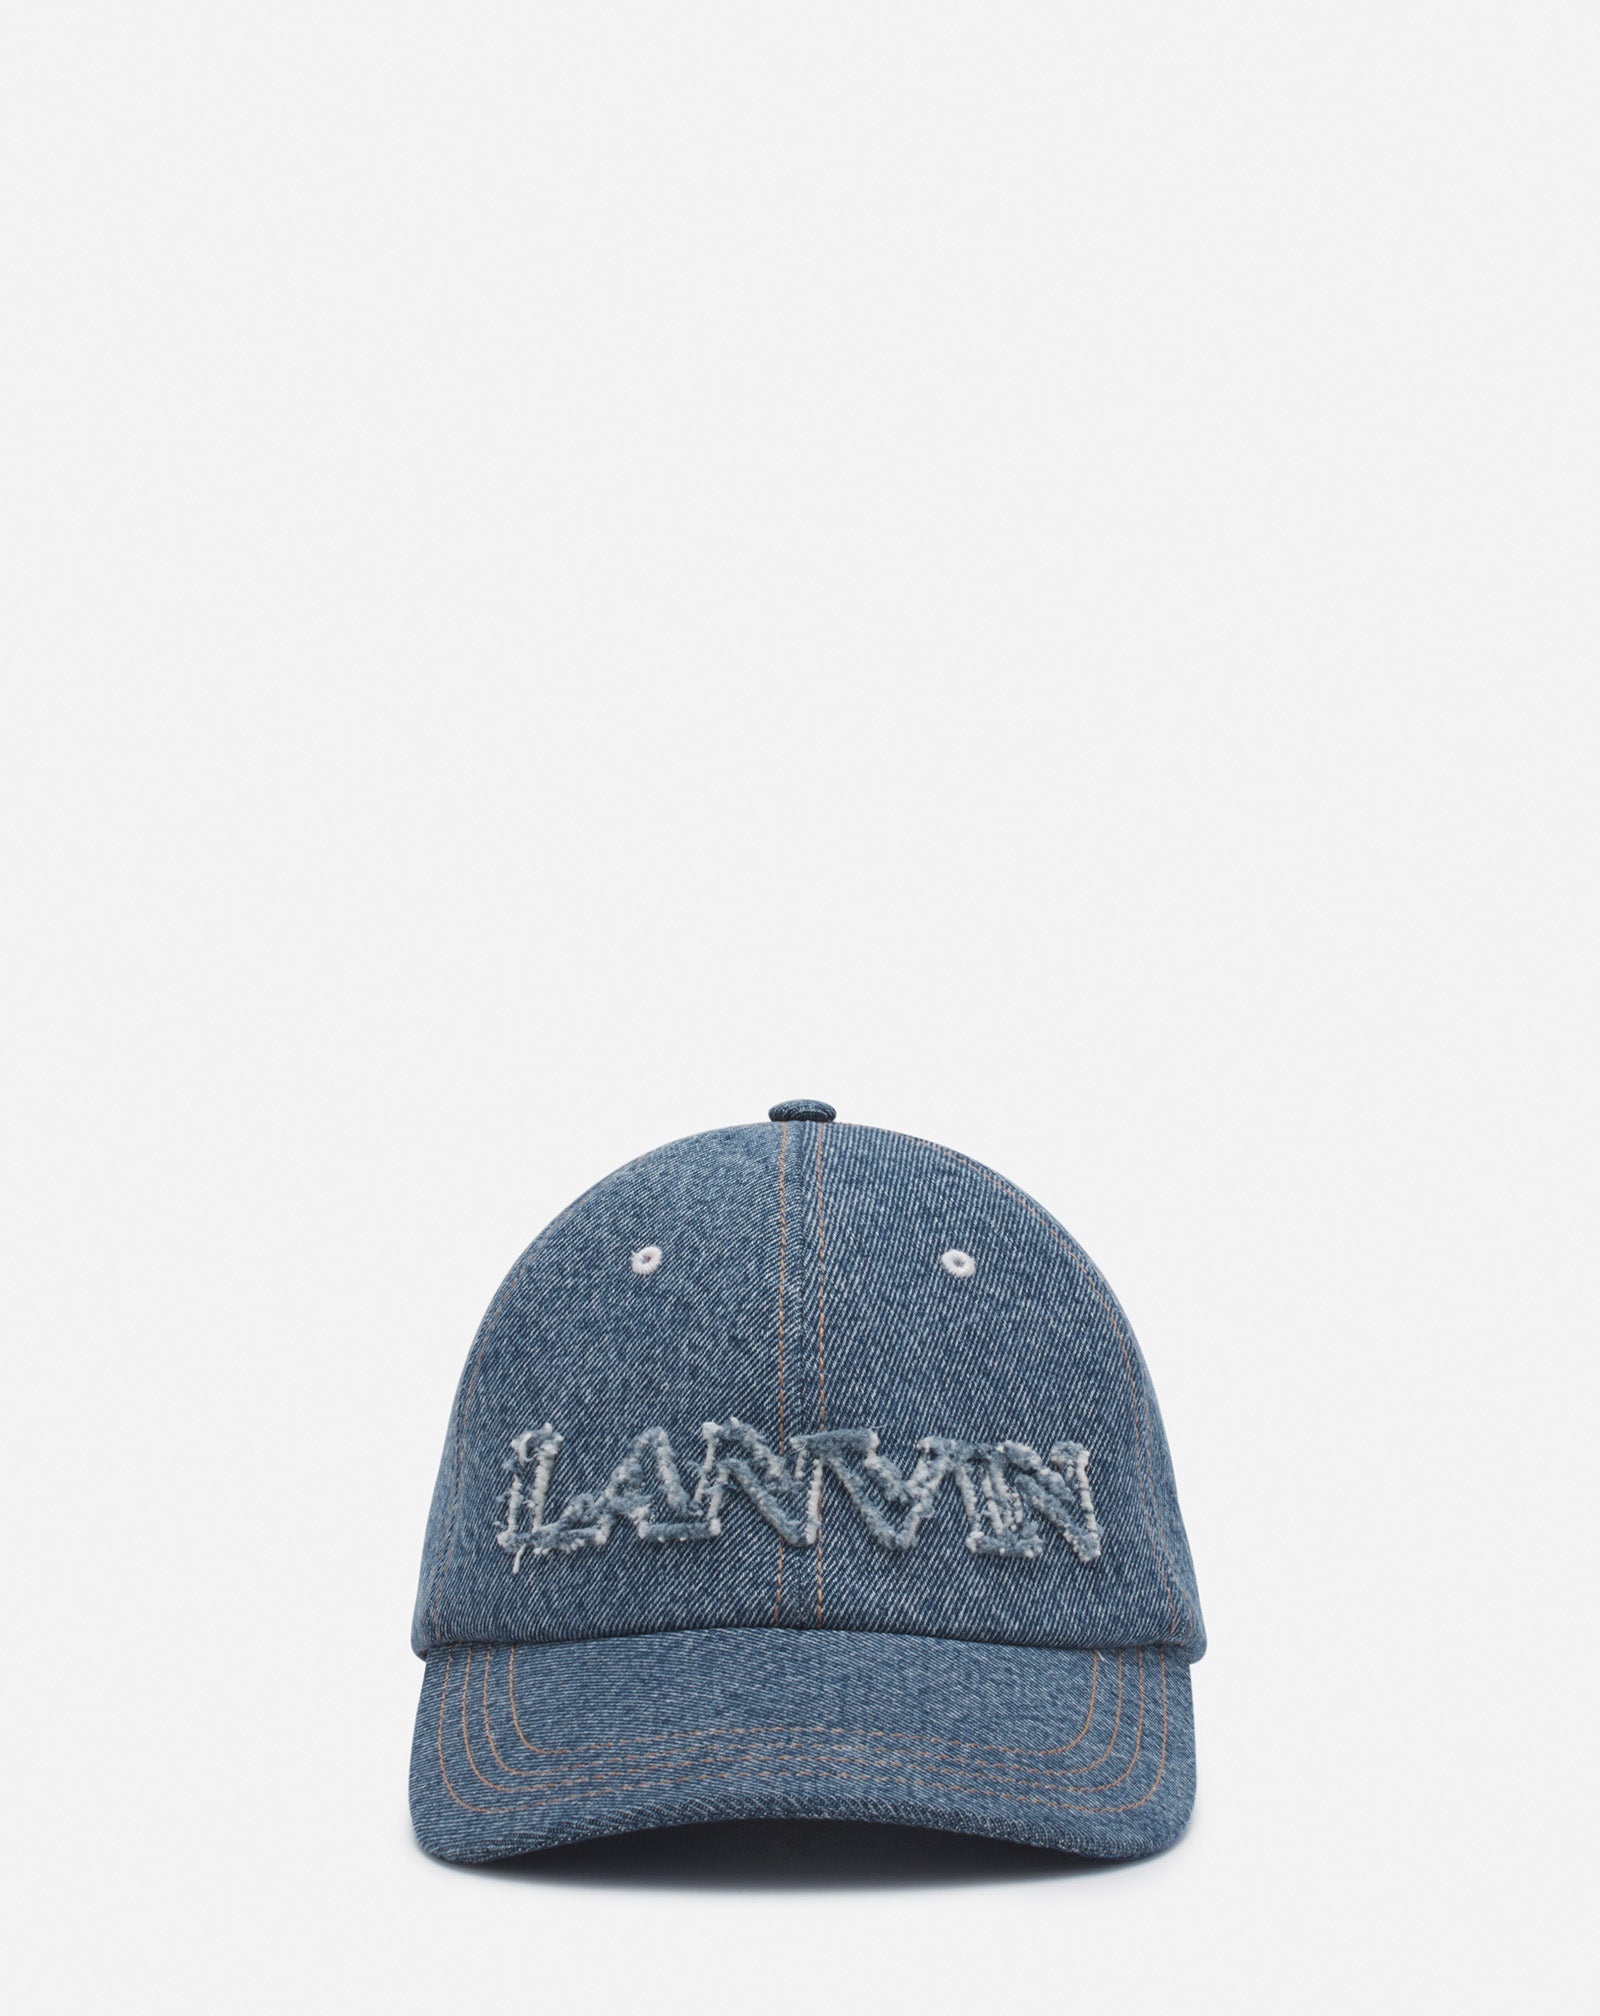 LANVIN CAP IN DENIM - 1